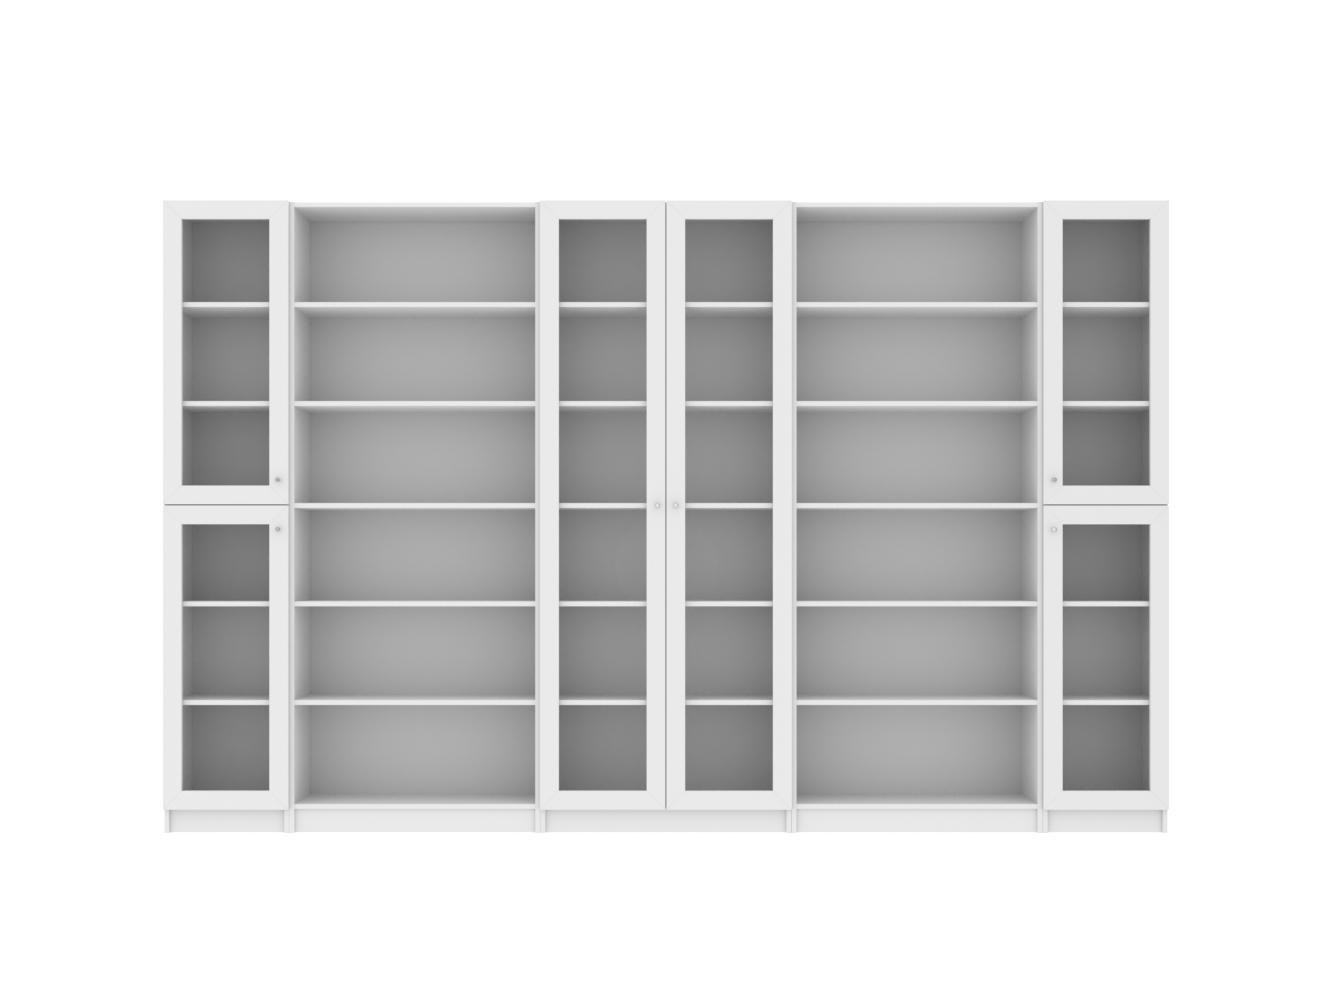 Изображение товара Книжный шкаф Билли 371 white ИКЕА (IKEA), 320x30x202 см на сайте adeta.ru